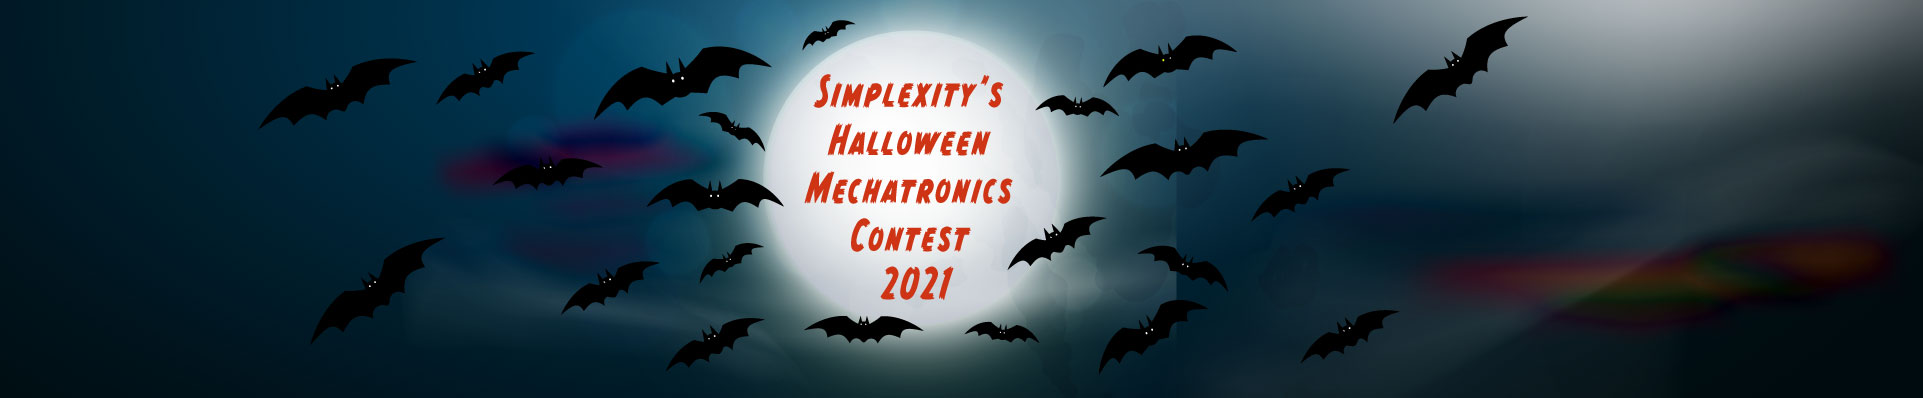 Halloween Mechatronics Contest 2021